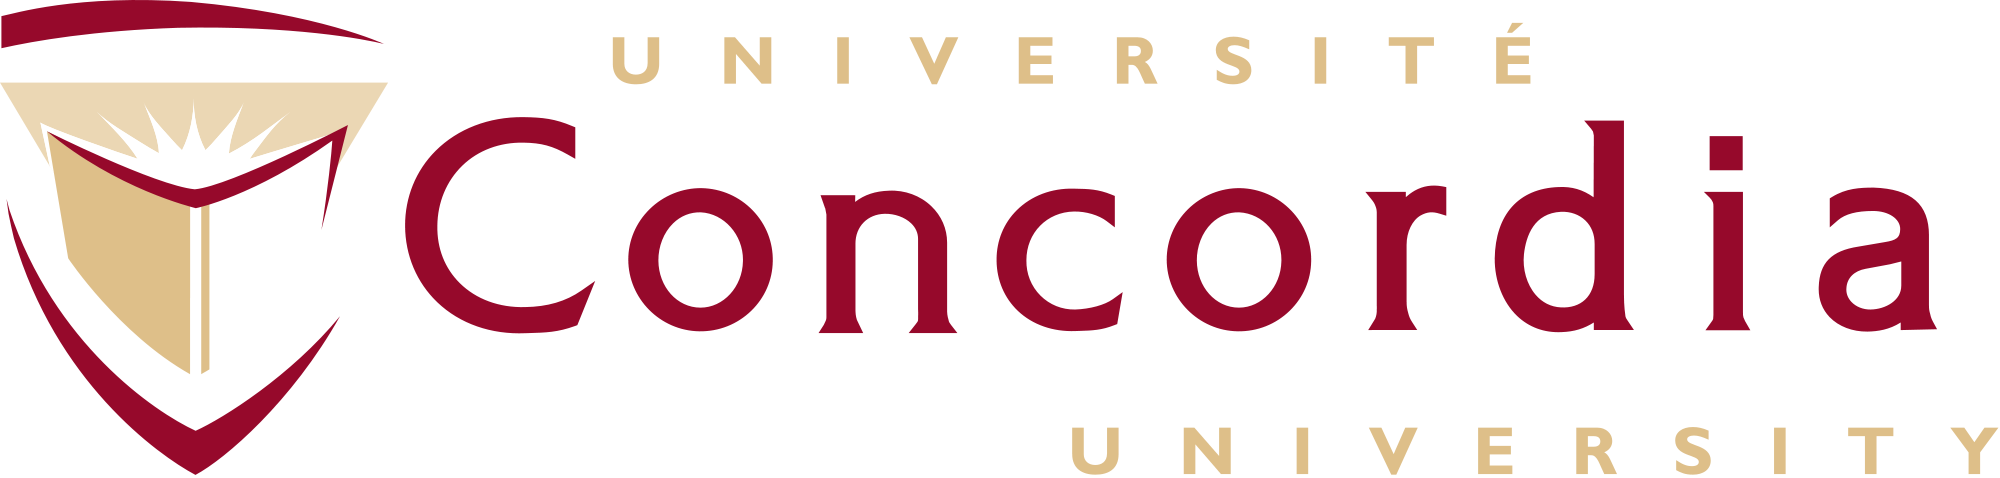 加拿大康考迪亚大学 Concordia University logo